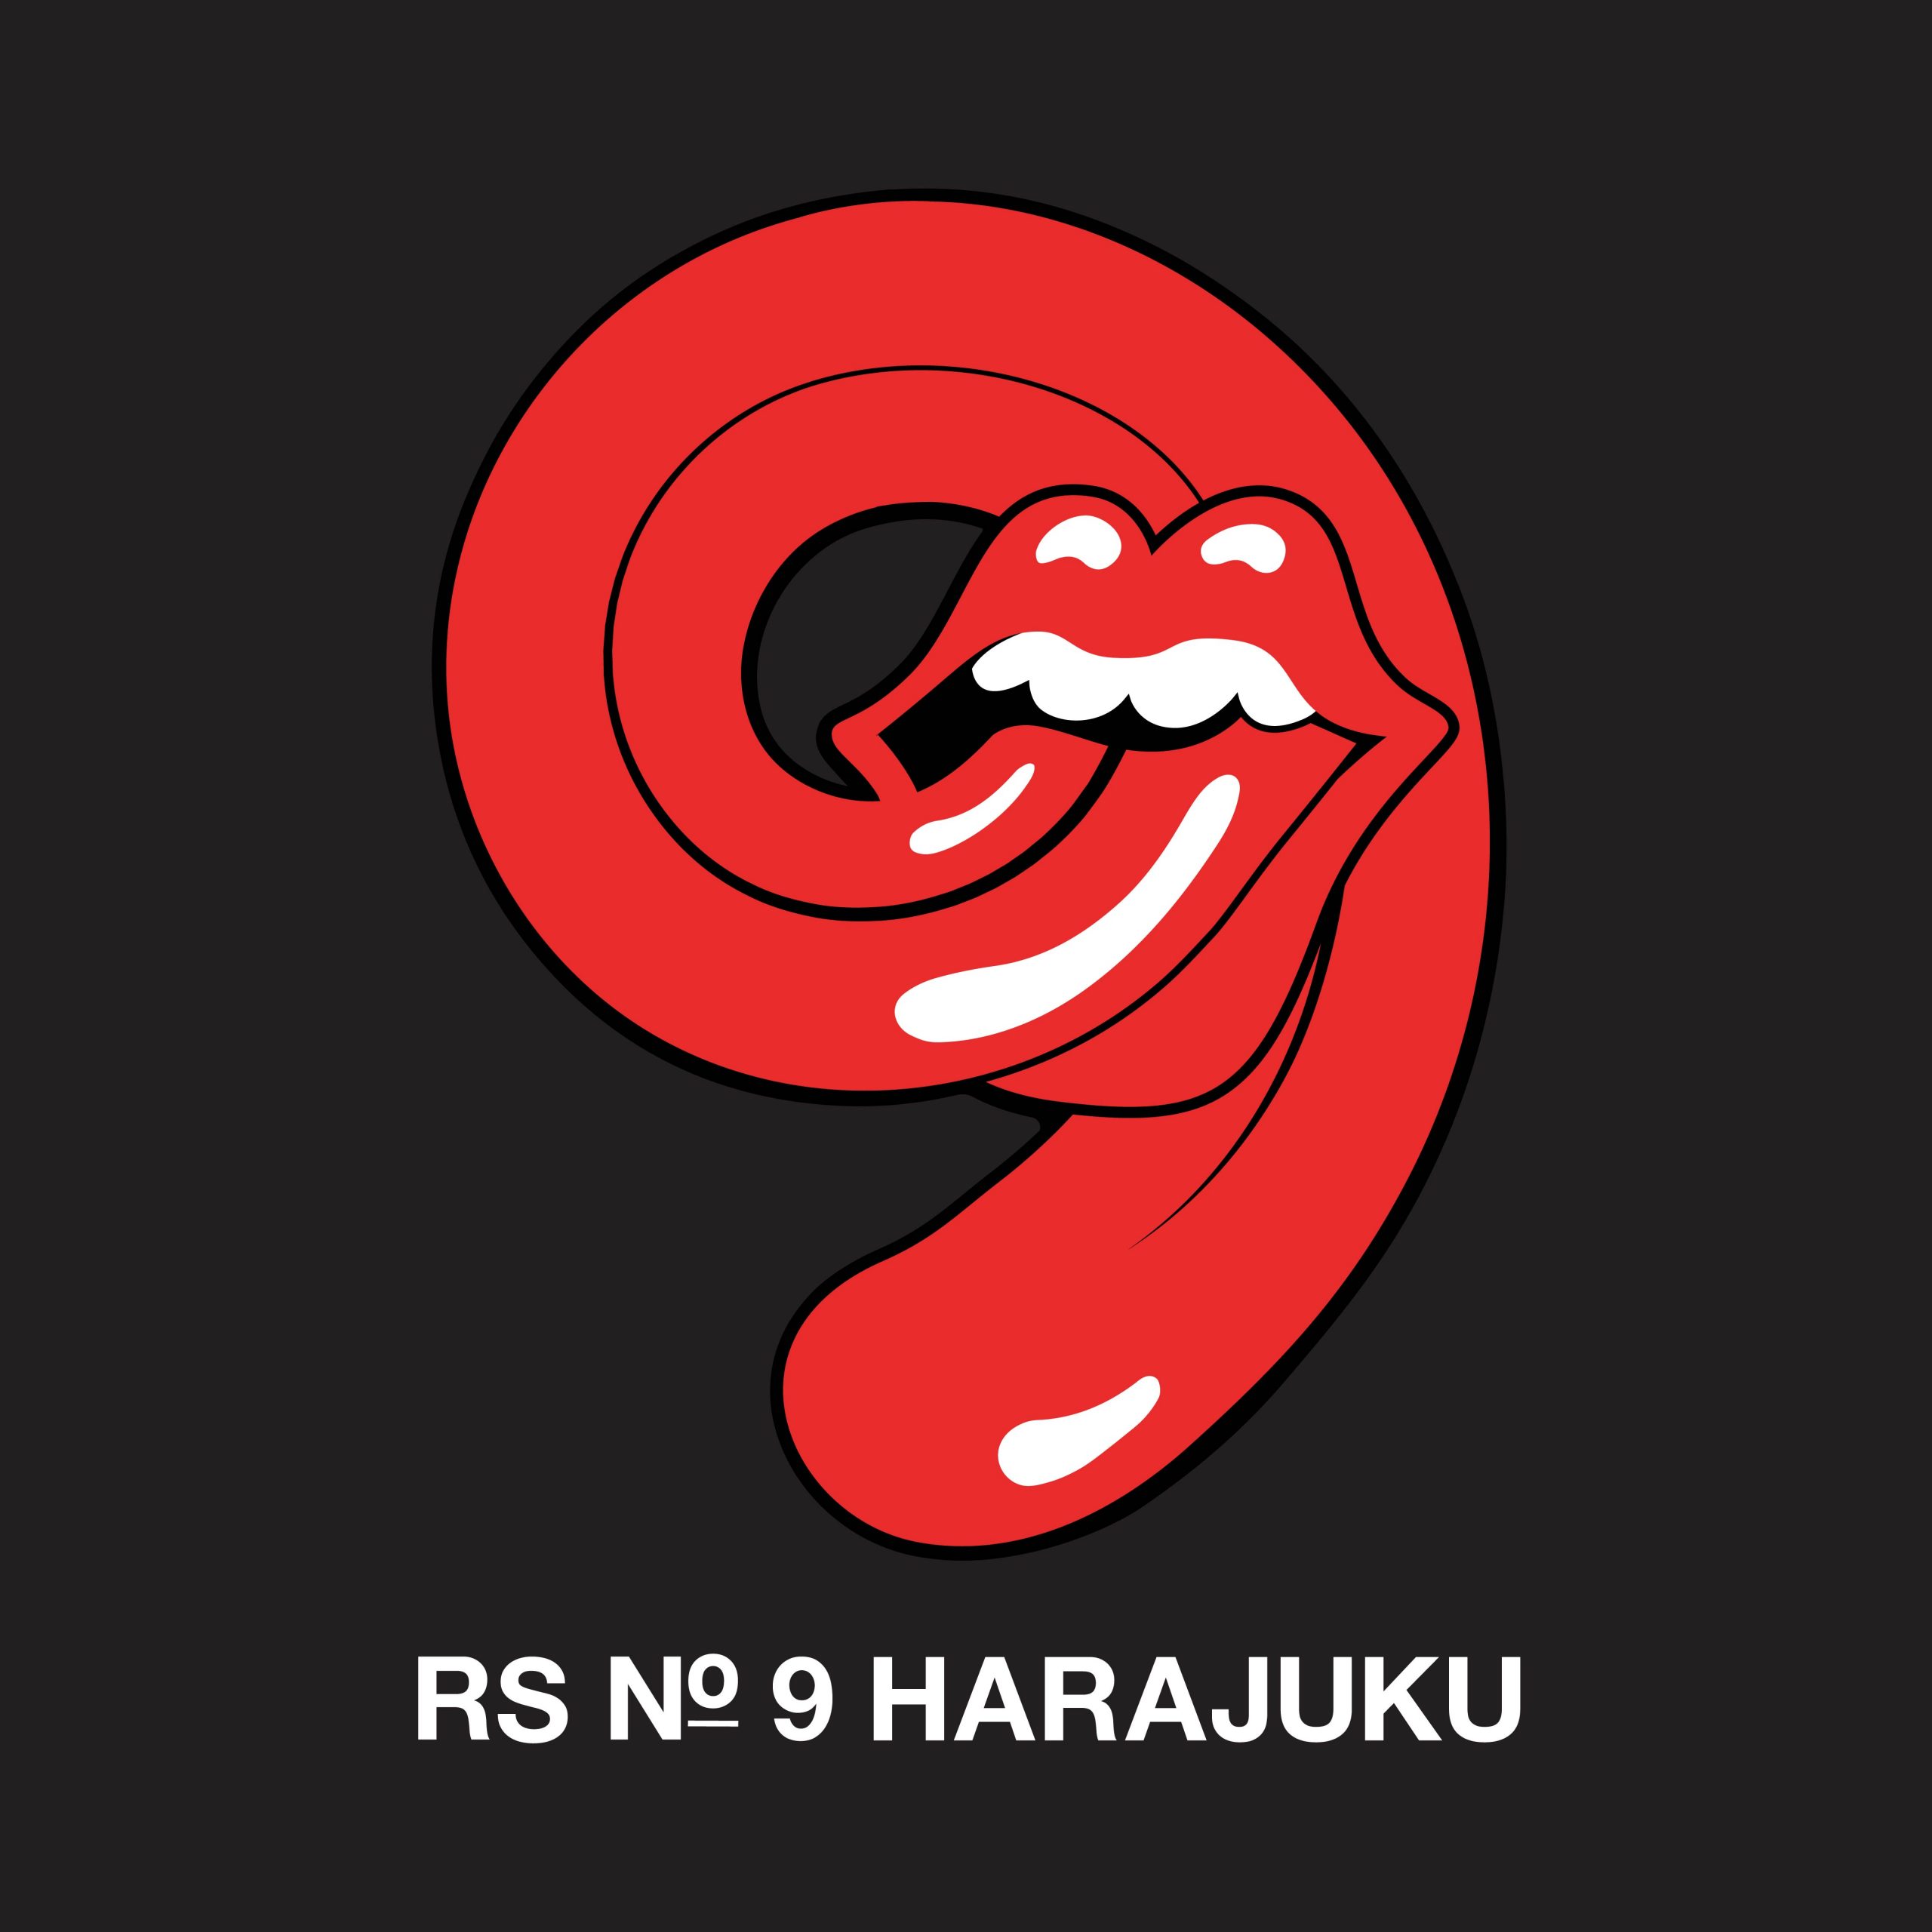 ザ・ローリング・ストーンズ ハックニー・ダイアモンズ No.9 HARAJUKU-